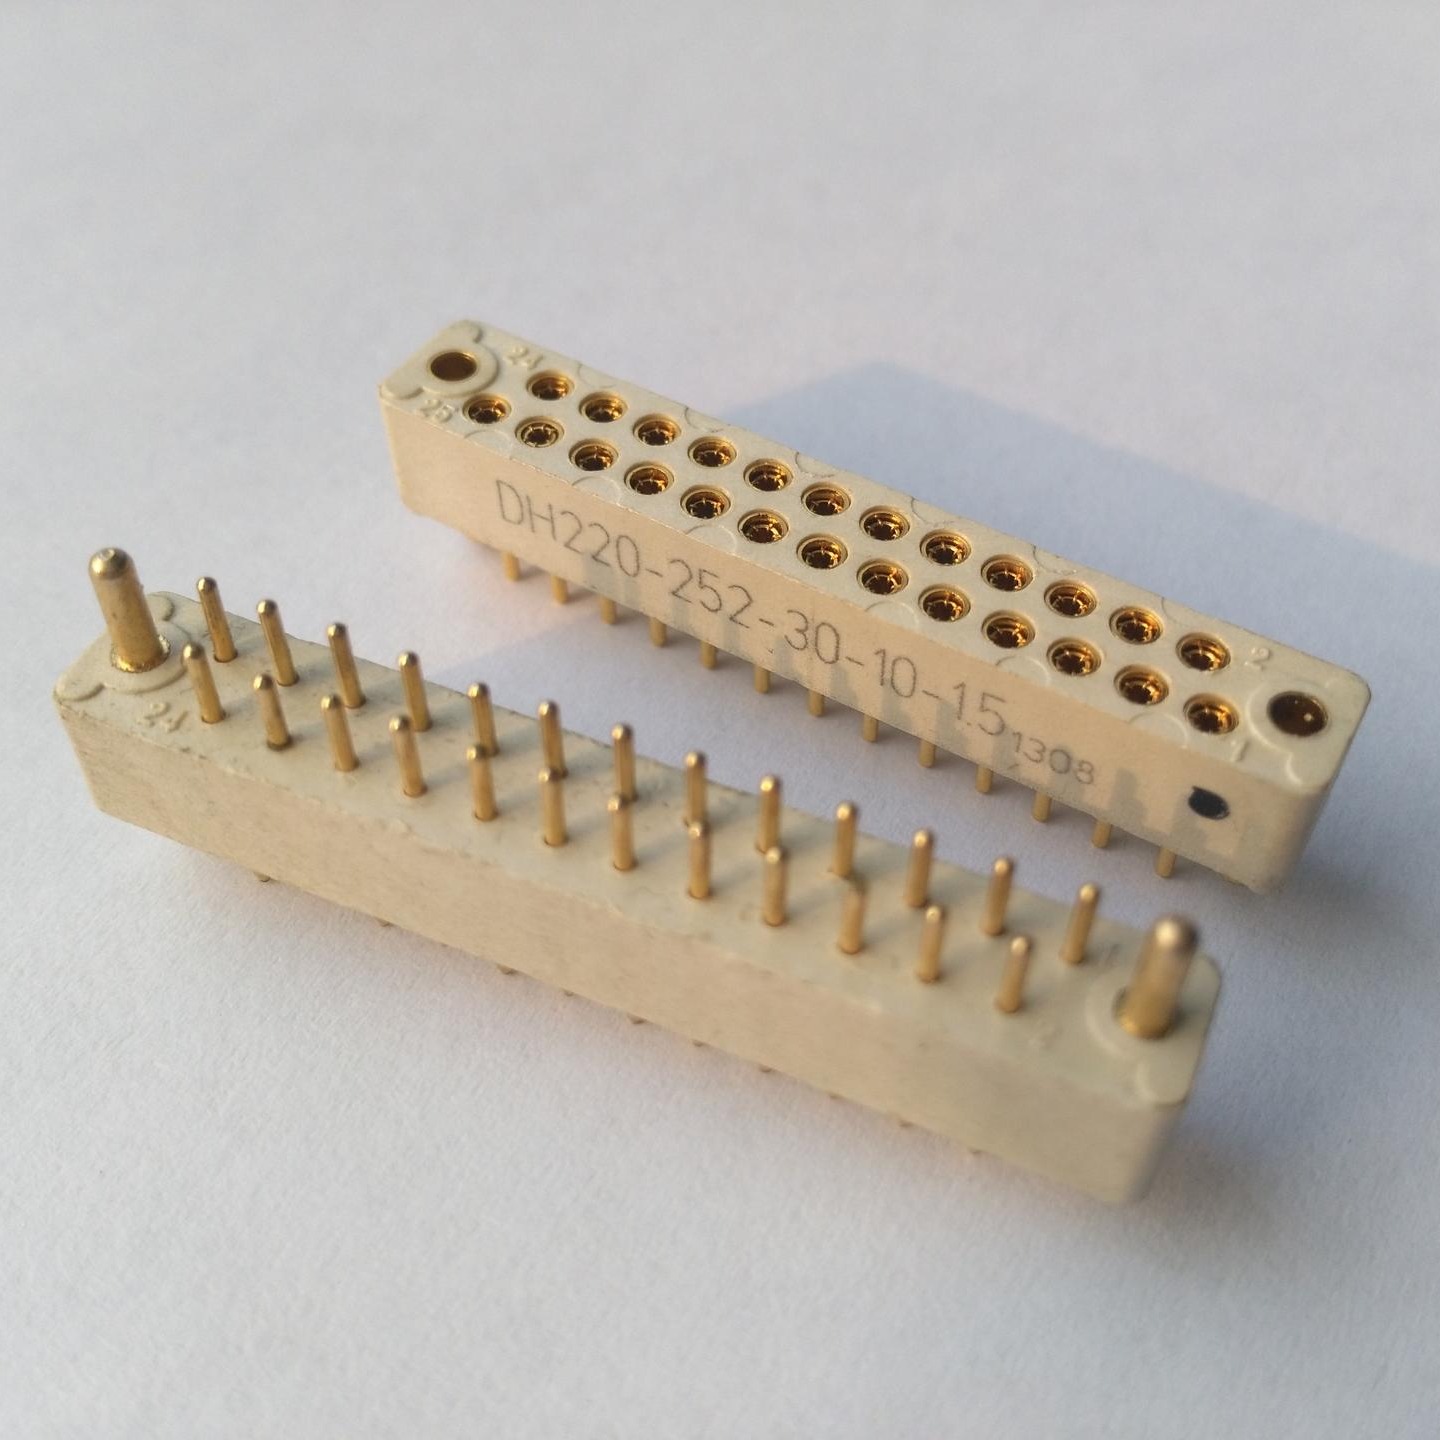 25芯线簧印制板连接器生产厂家 东普电子 方形线簧连接器 精密连接器图片